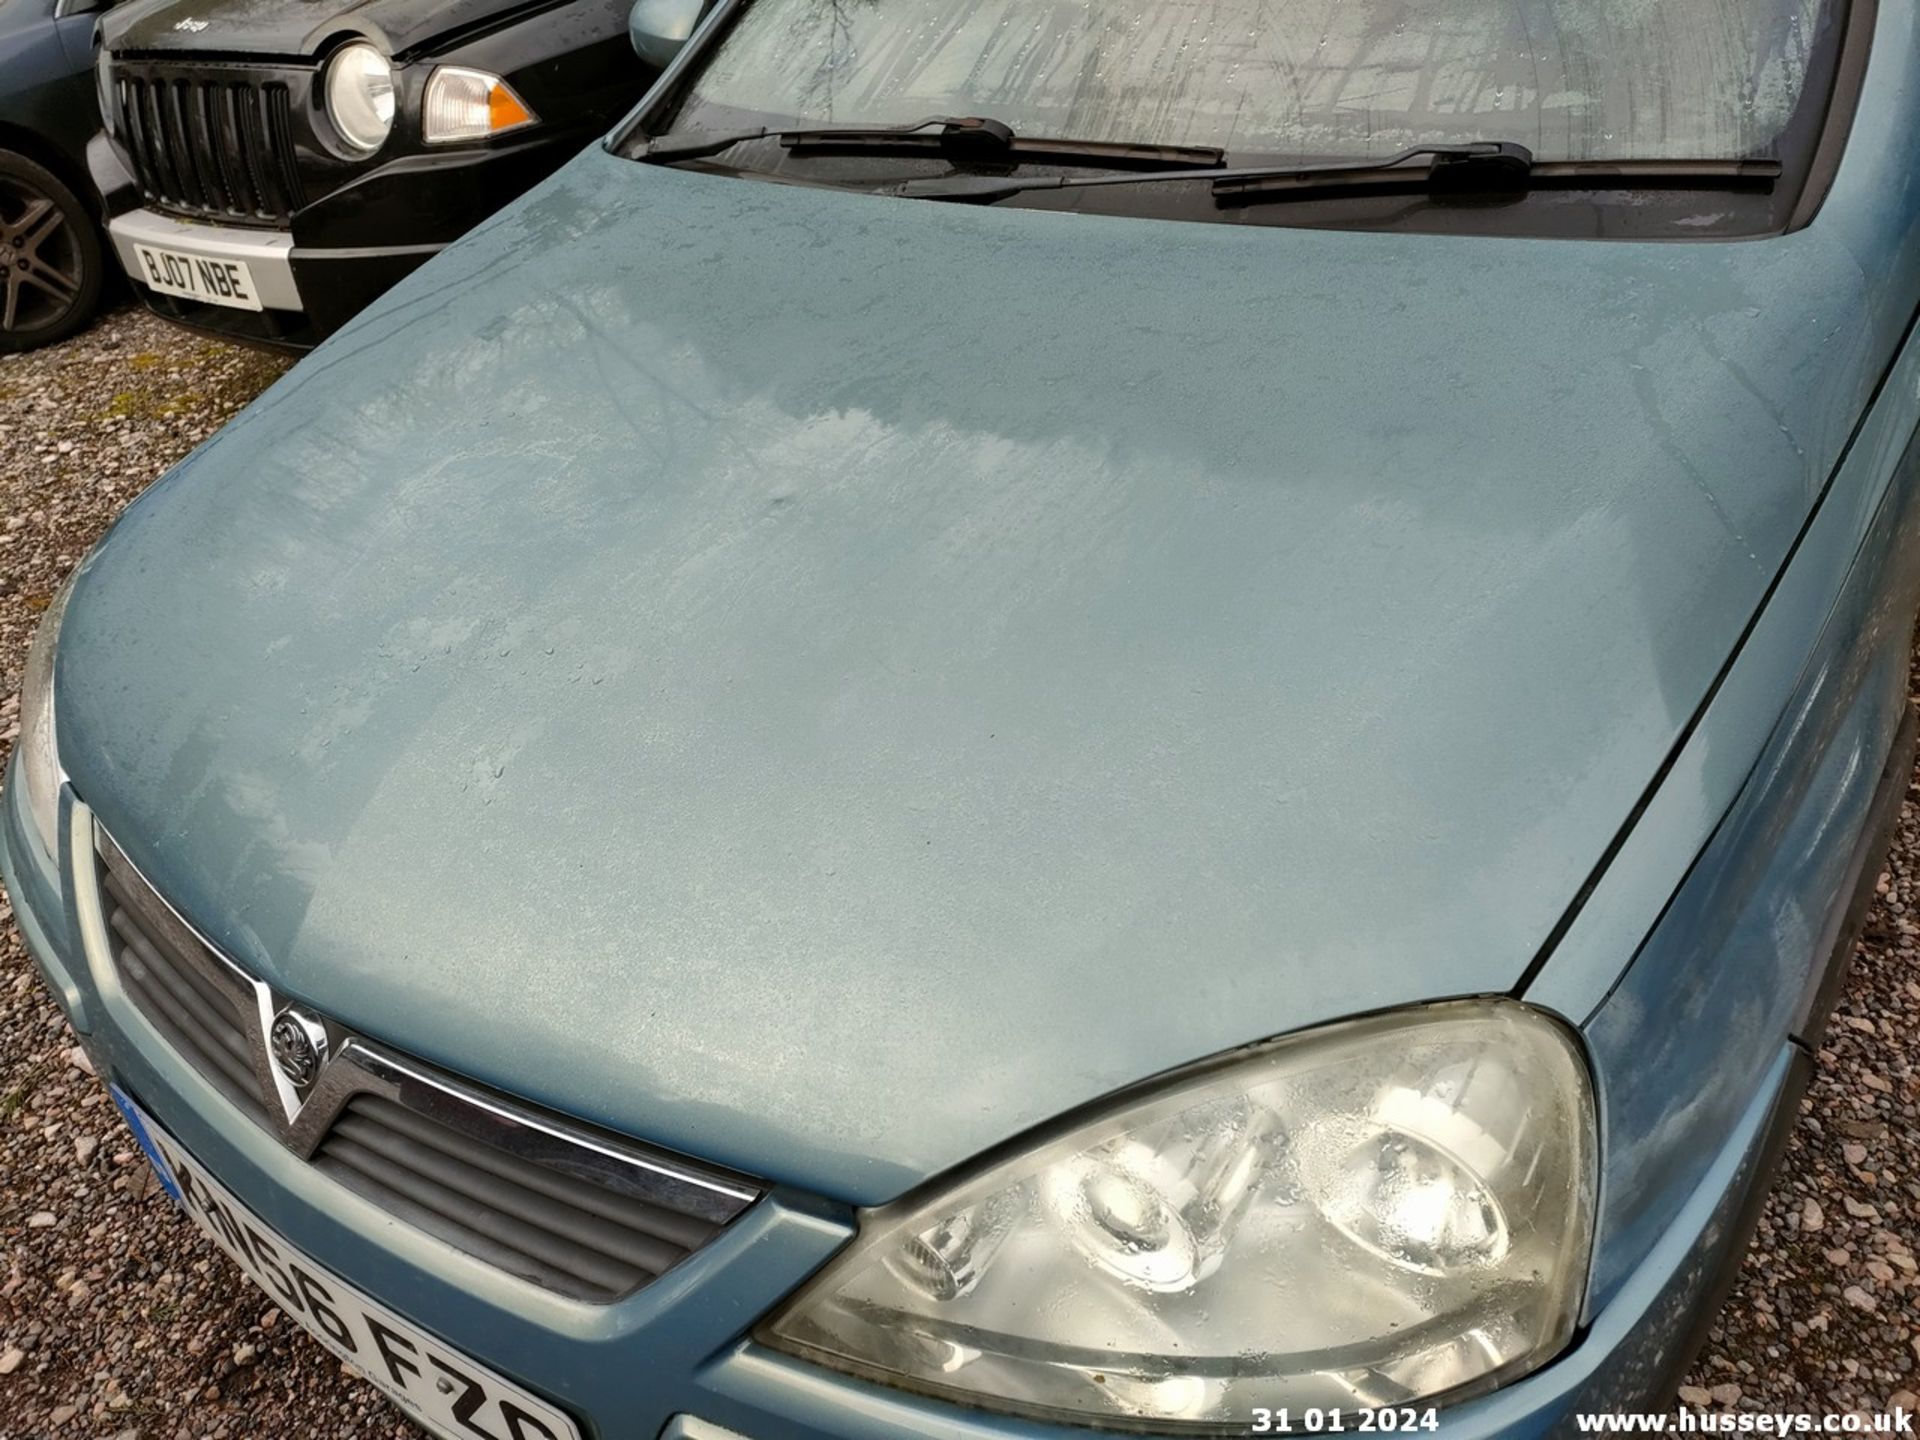 06/56 VAUXHALL CORSA DESIGN 16V TWINPORT - 1364cc 5dr Hatchback (Grey, 110k) - Image 11 of 46